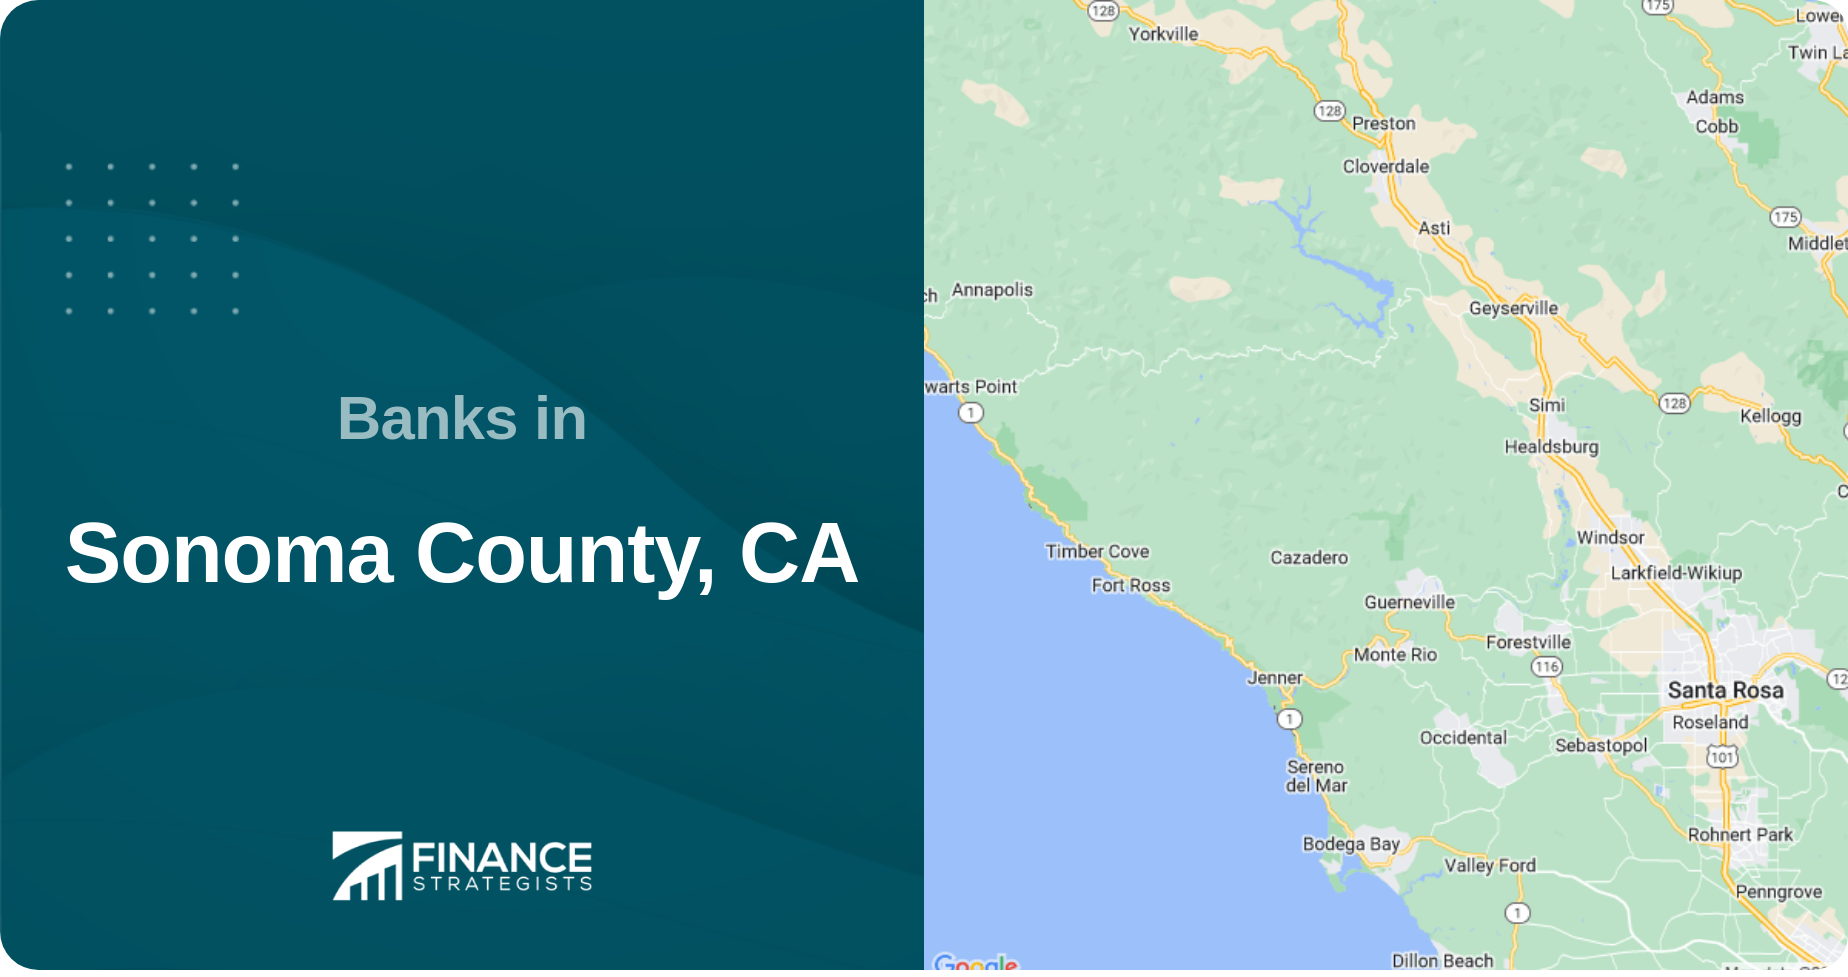 Banks in Sonoma County, CA